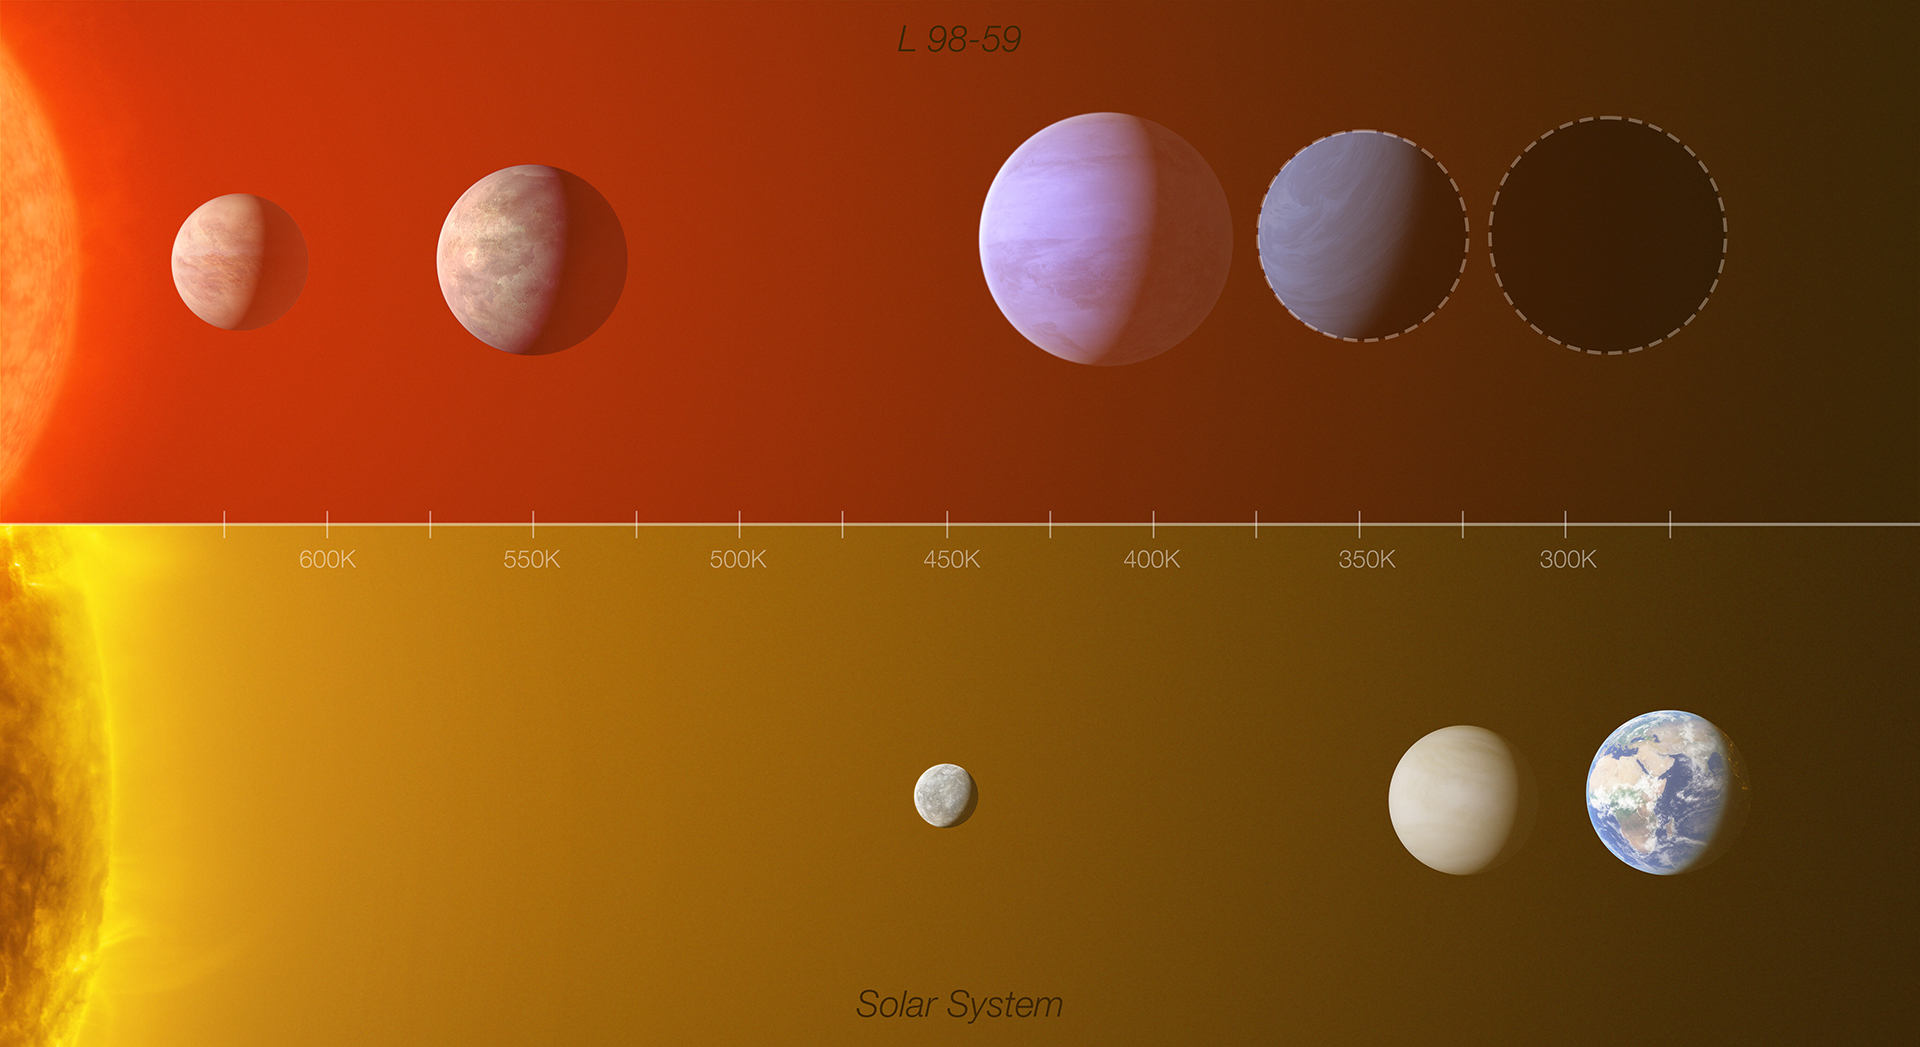 Comparación del sistema de exoplanetas de L 98-59 con la zona interior del Sistema Solar. Crédito: ESO/L. Calçada /M. Kornmesser (Reconocimiento: O. Demangeon)